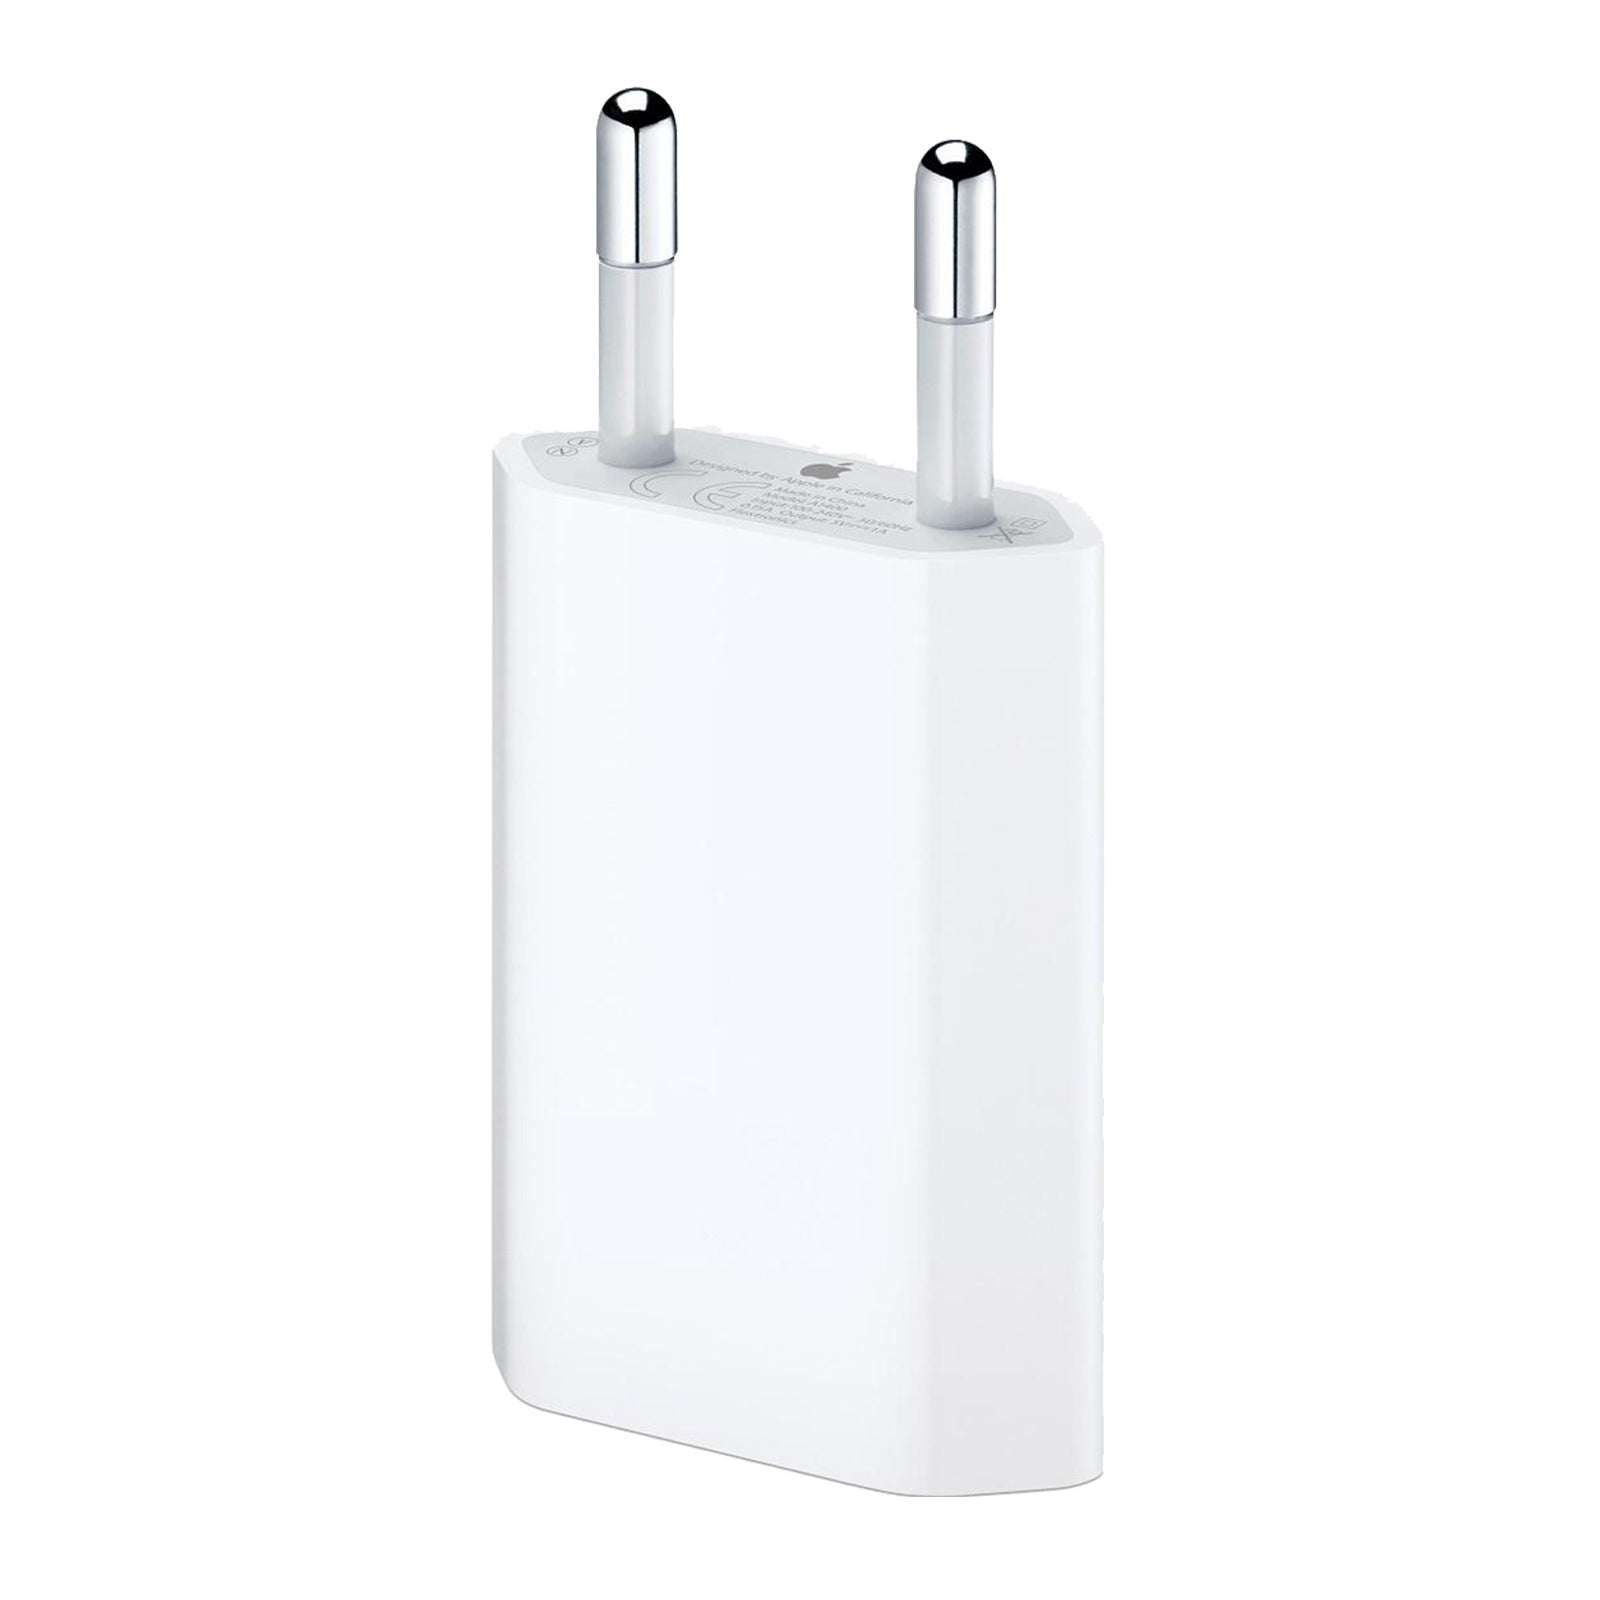 Apple - Adaptateur secteur USB (5W)